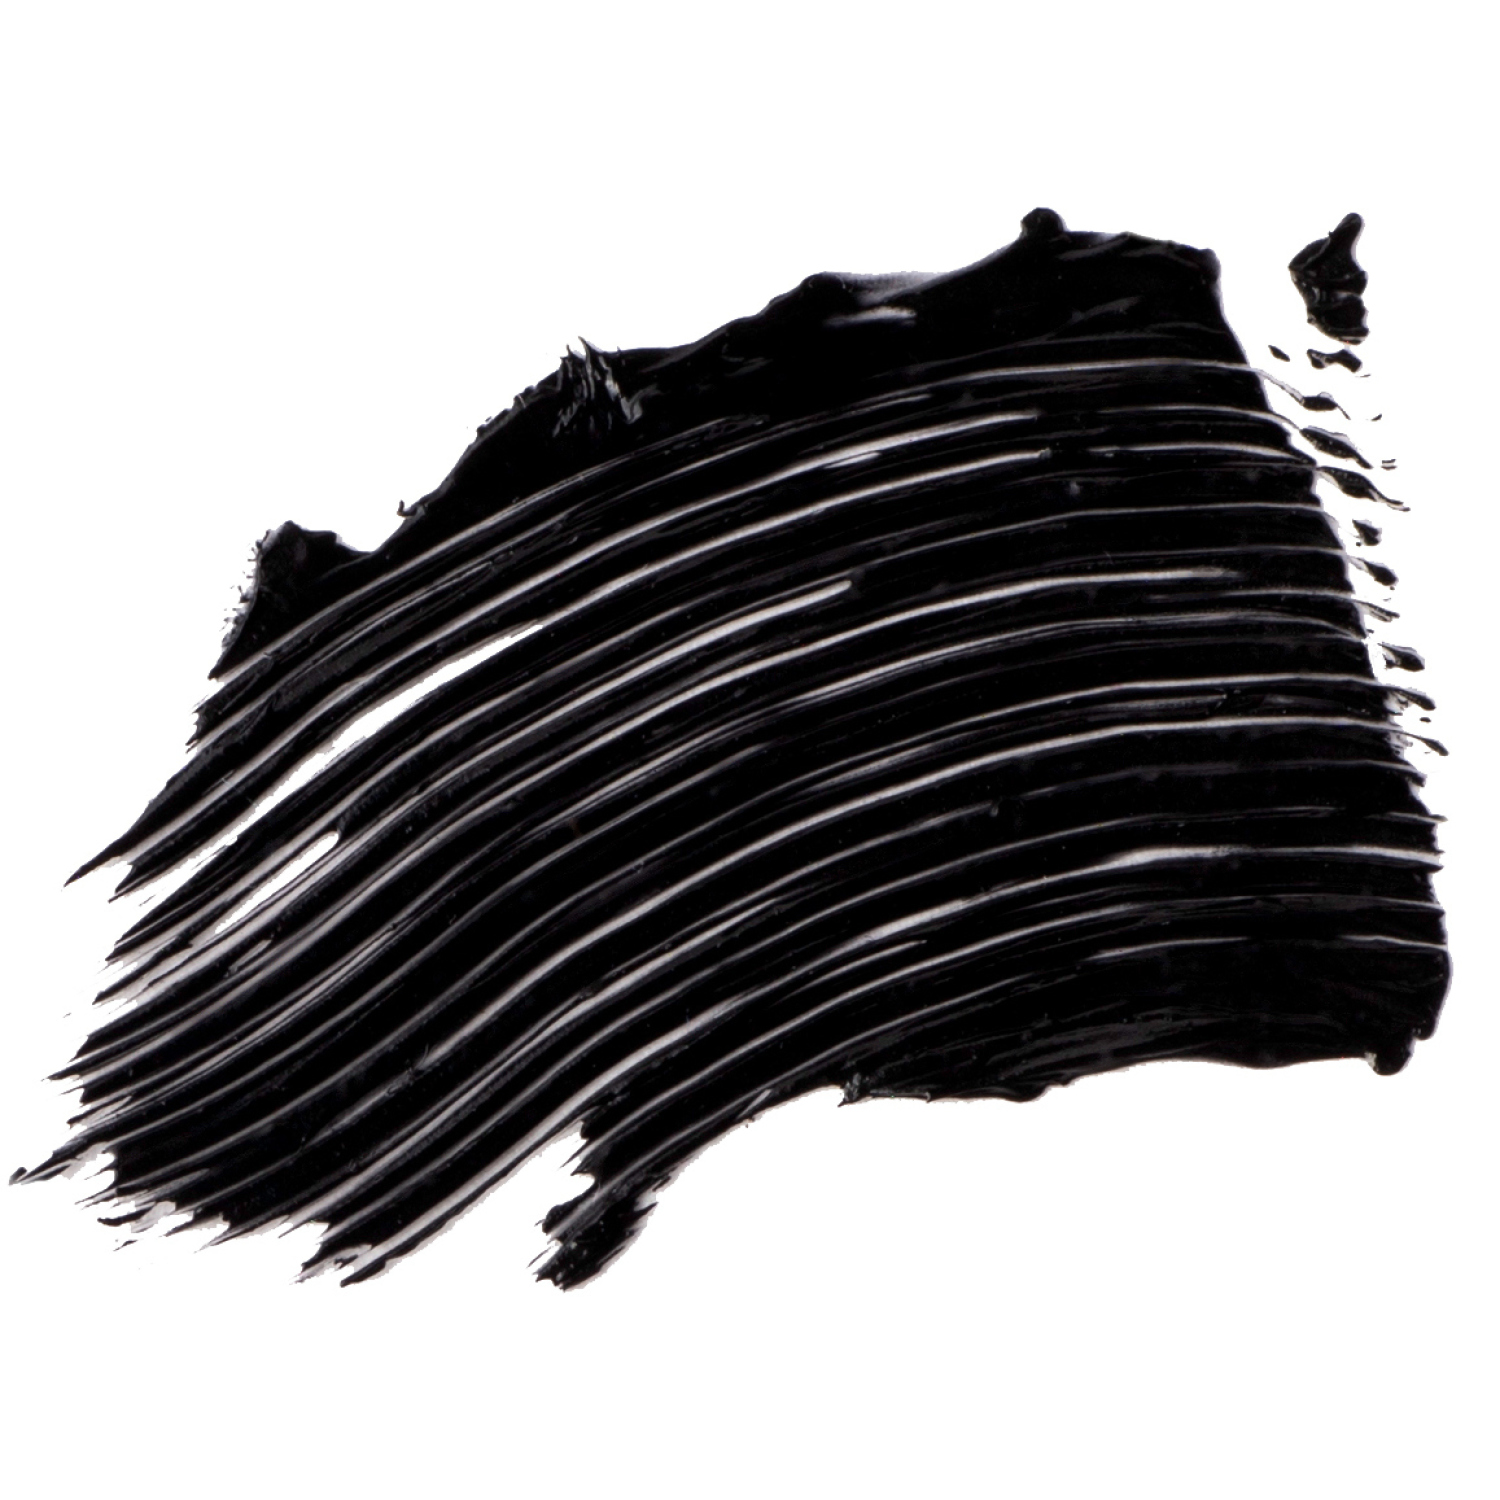 Тушь для ресниц Vivienne Sabo Cabaret Latex, влагостойкая, экстремальный объем, удлинение и разделение, пластиковая щеточка, тон 01, черная, 9мл, цвет черный - фото 3